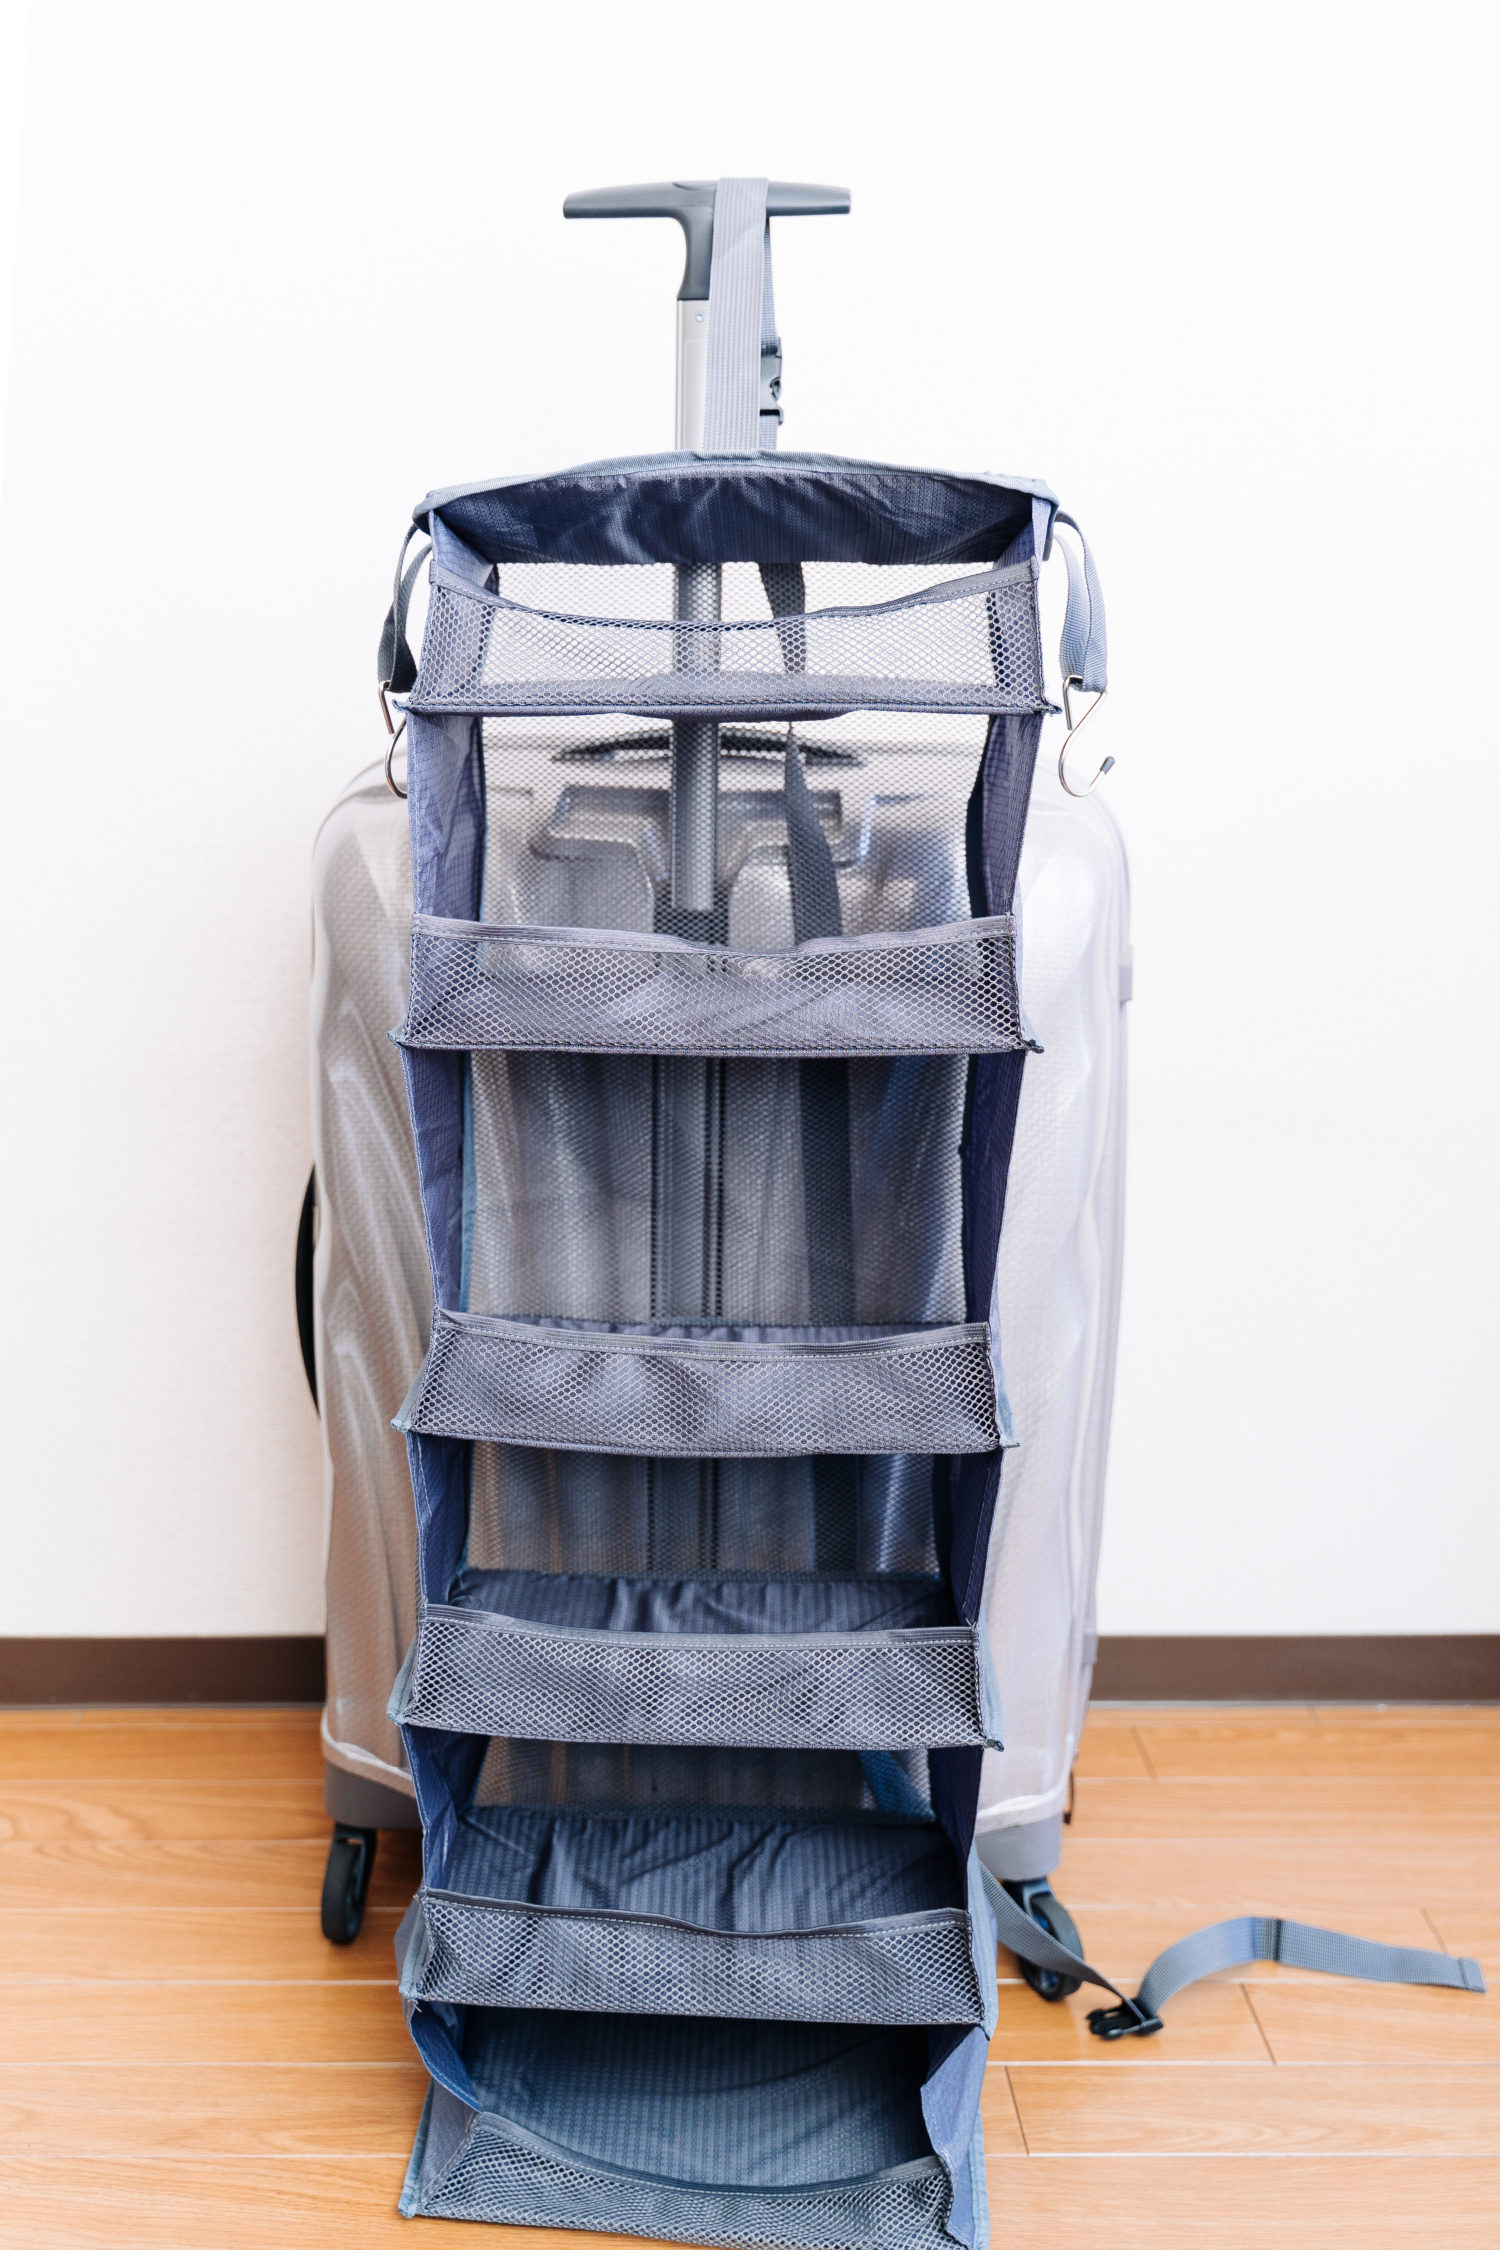 旅先での衣類の整理に。折り畳んで収納できる『スーツケース